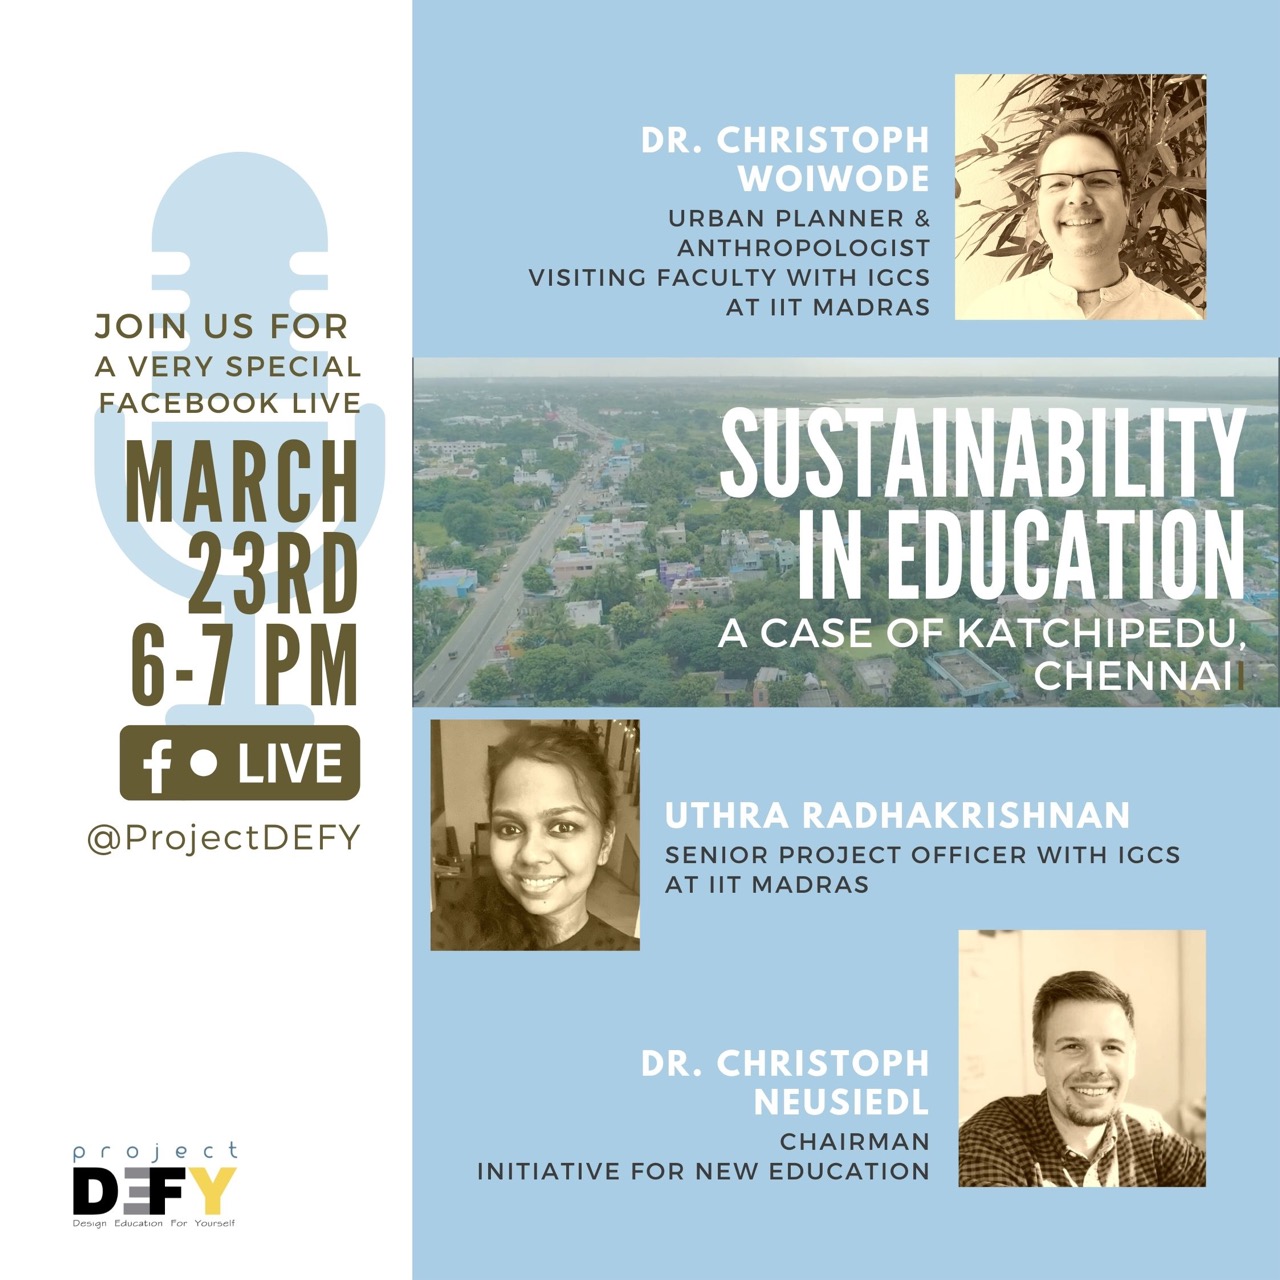 Sustainability in Education: The Case of Katchipedu, Chennai